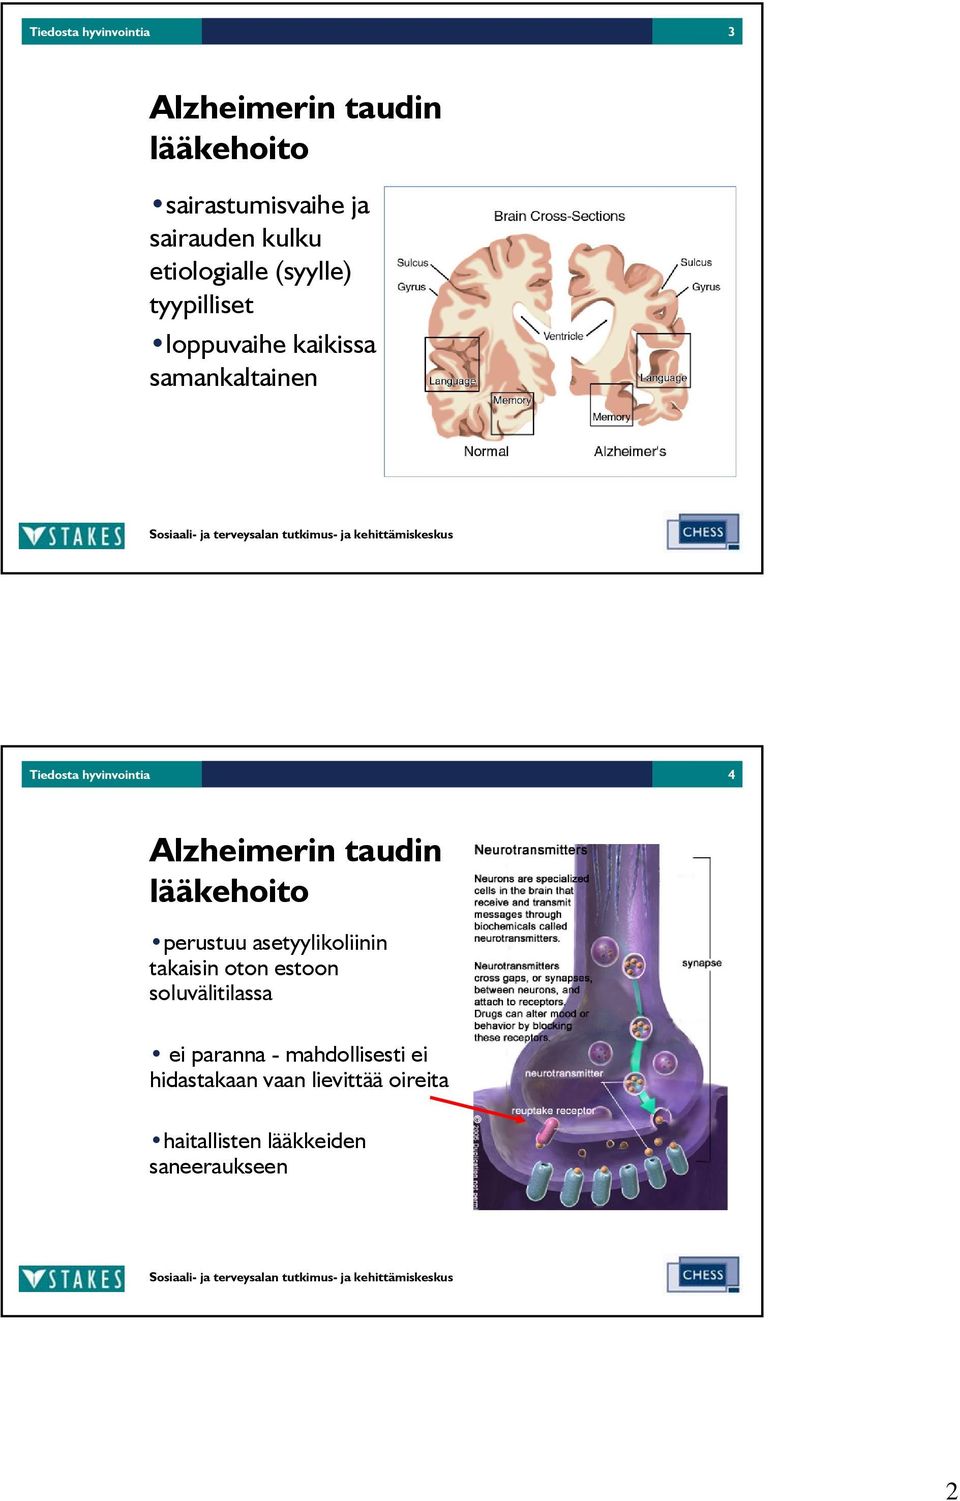 Alzheimerin taudin lääkehoito perustuu asetyylikoliinin takaisin oton estoon soluvälitilassa